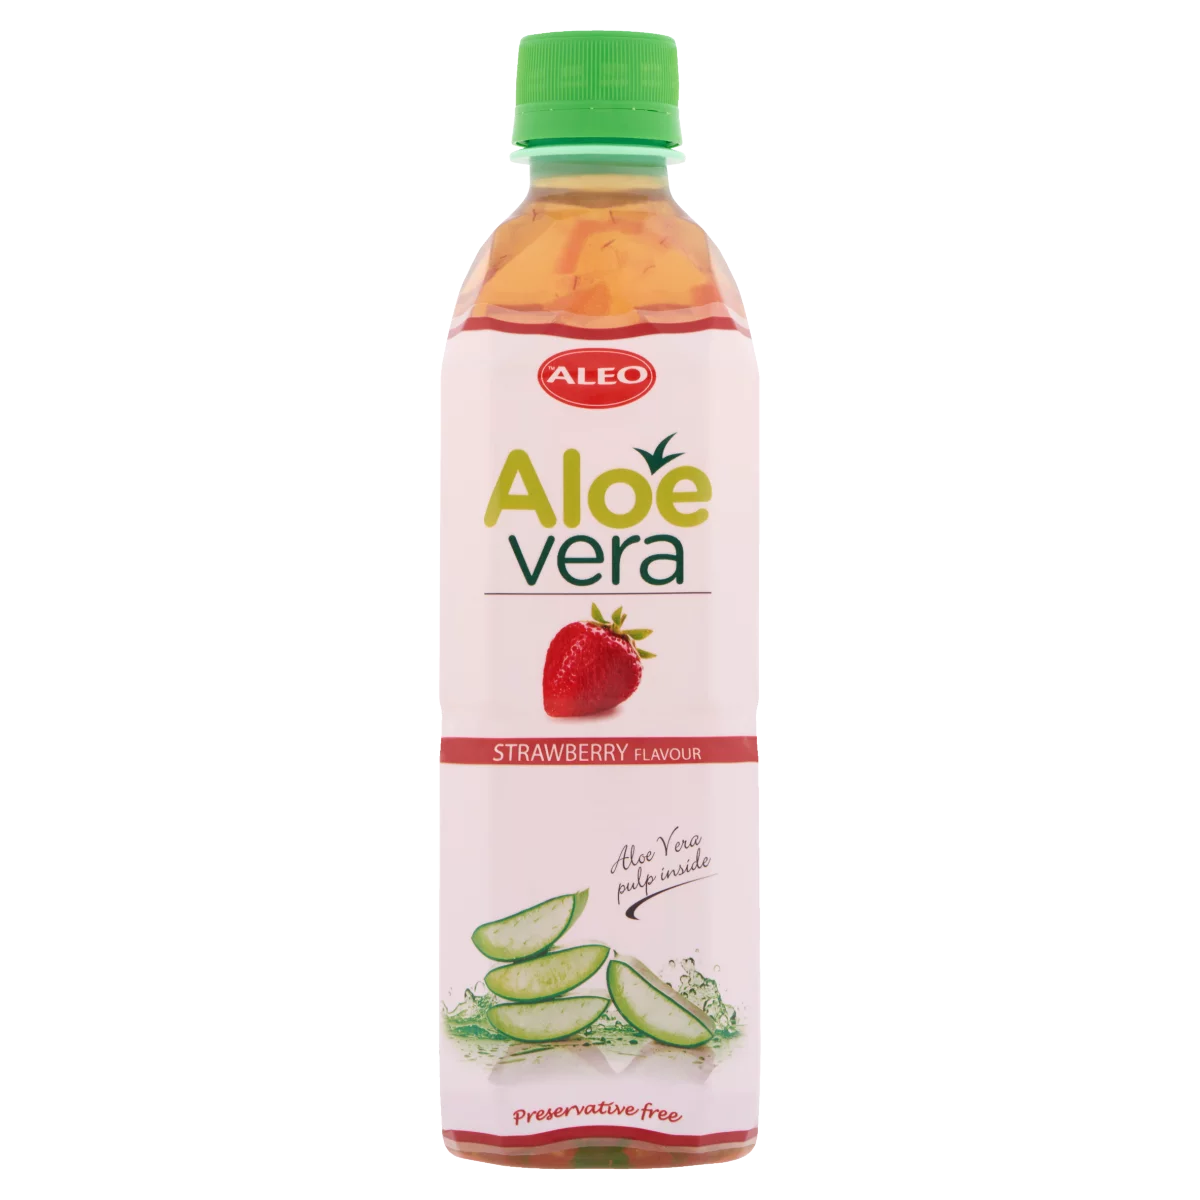 Aleo eper ízű aloe vera ital 500 ml